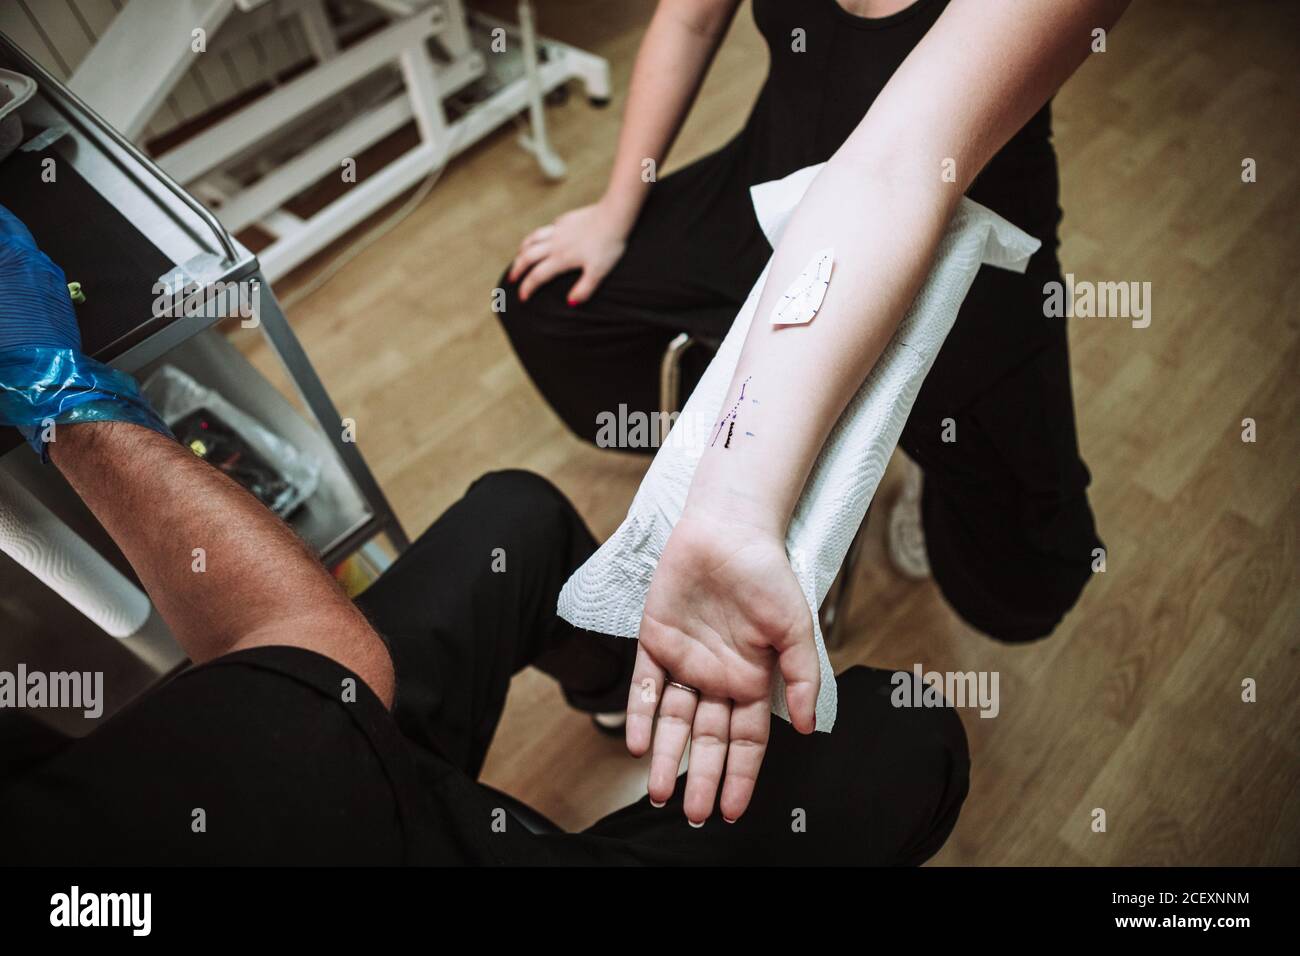 Du dessus de la récolte anonyme homme tatoueur se préparant à la fabrication tatouage au poignet de la cliente dans un salon moderne Banque D'Images